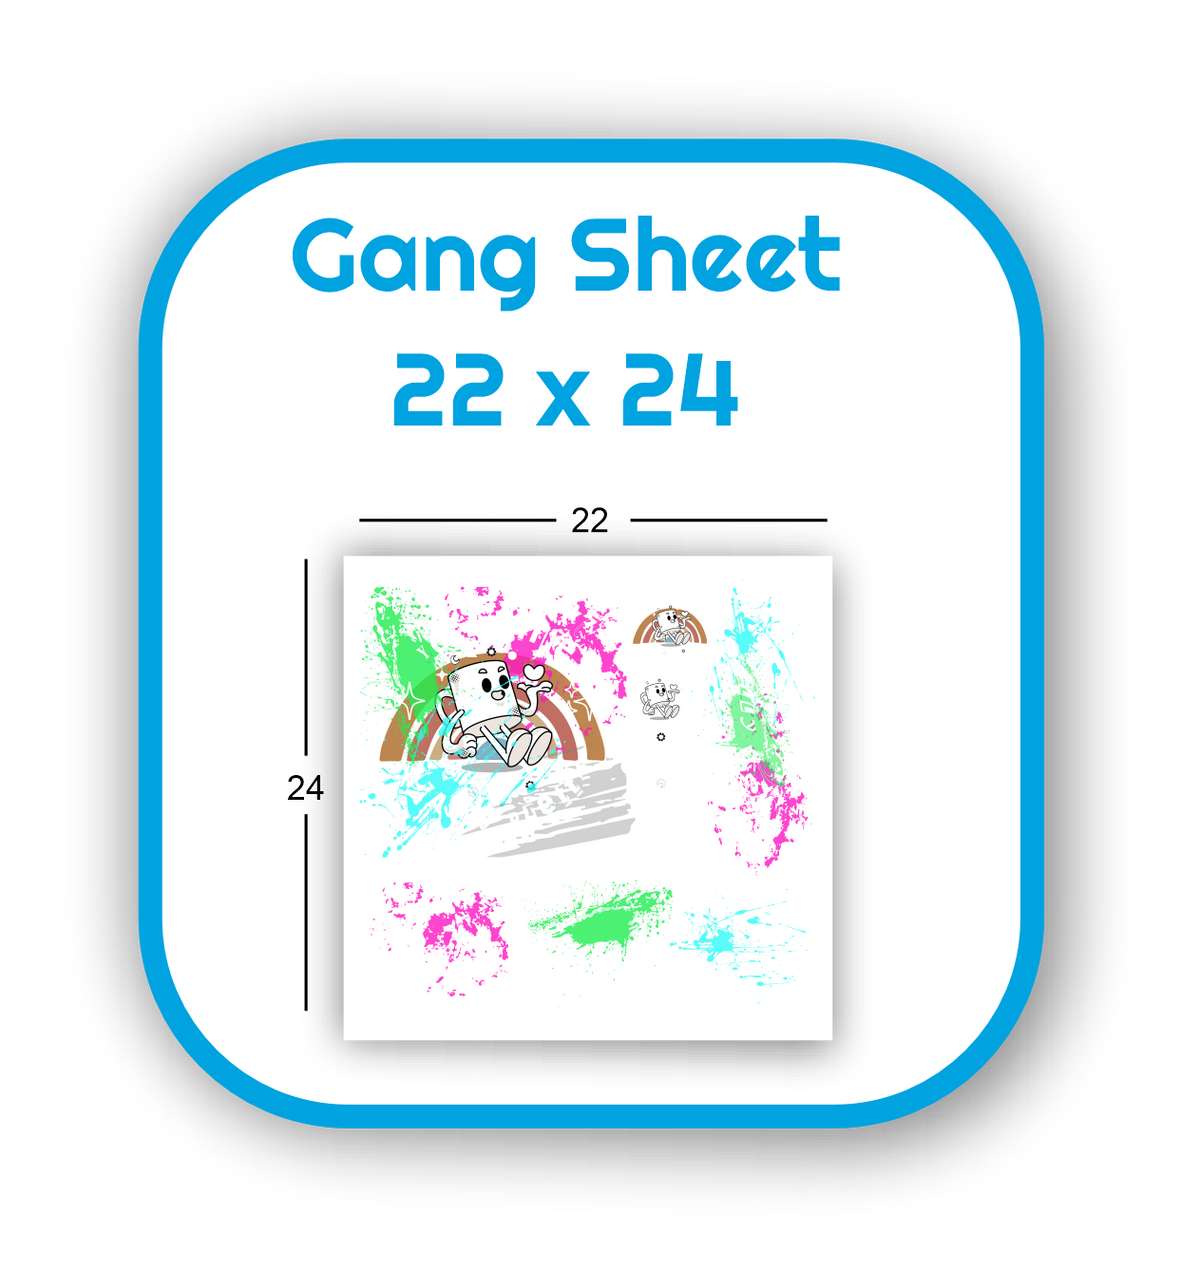 Gang Sheet 22x24